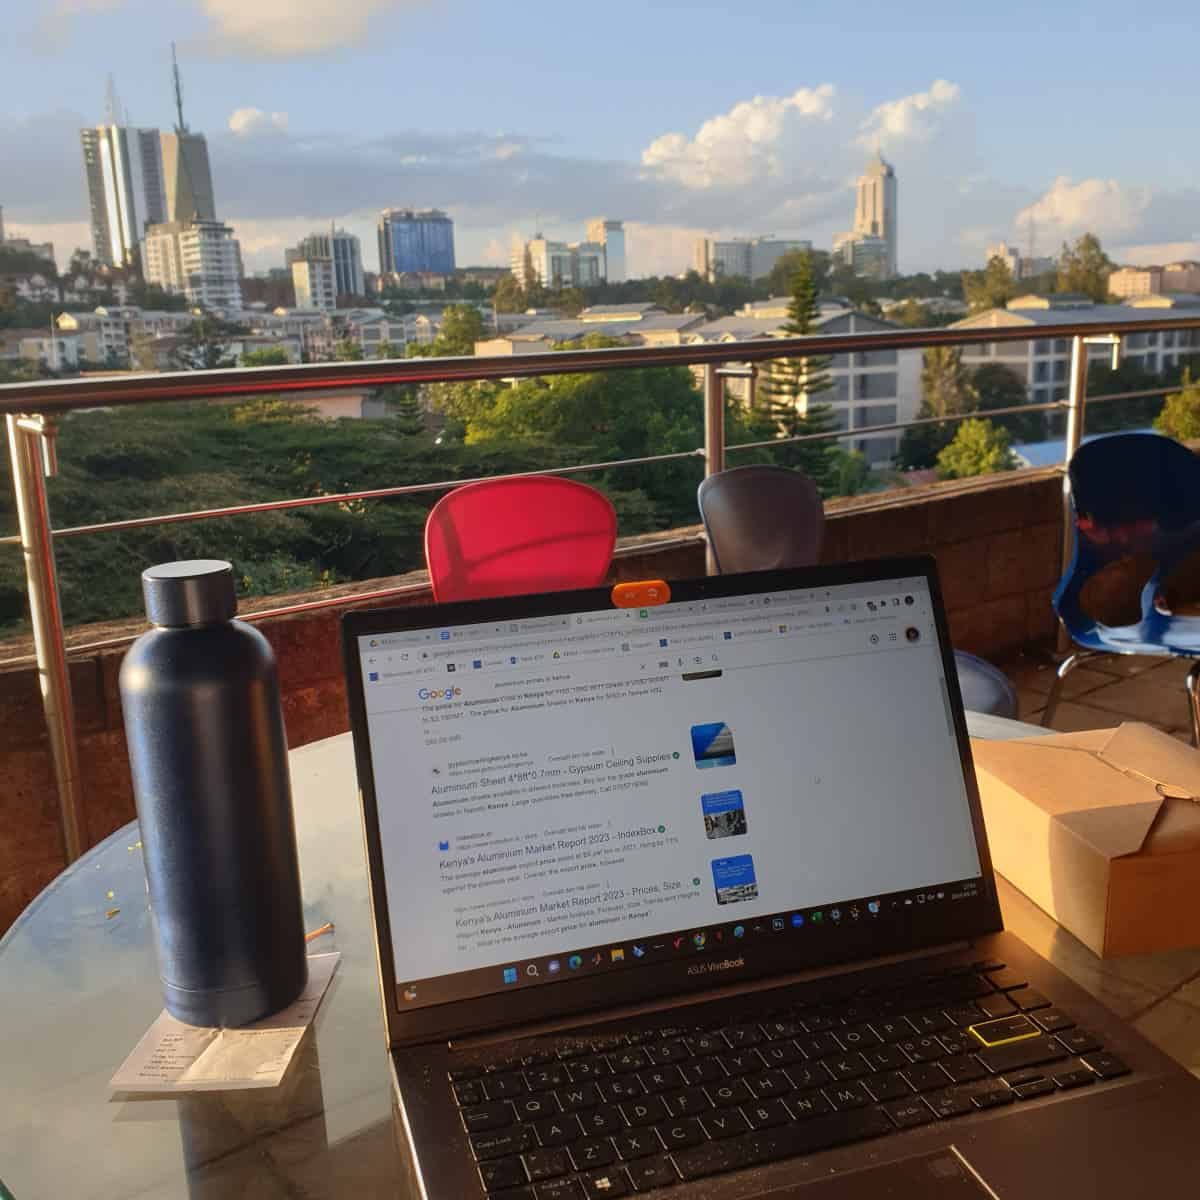 En bild från när jag sitter och pluggar med min laptop på en takterass med utsikt över staden